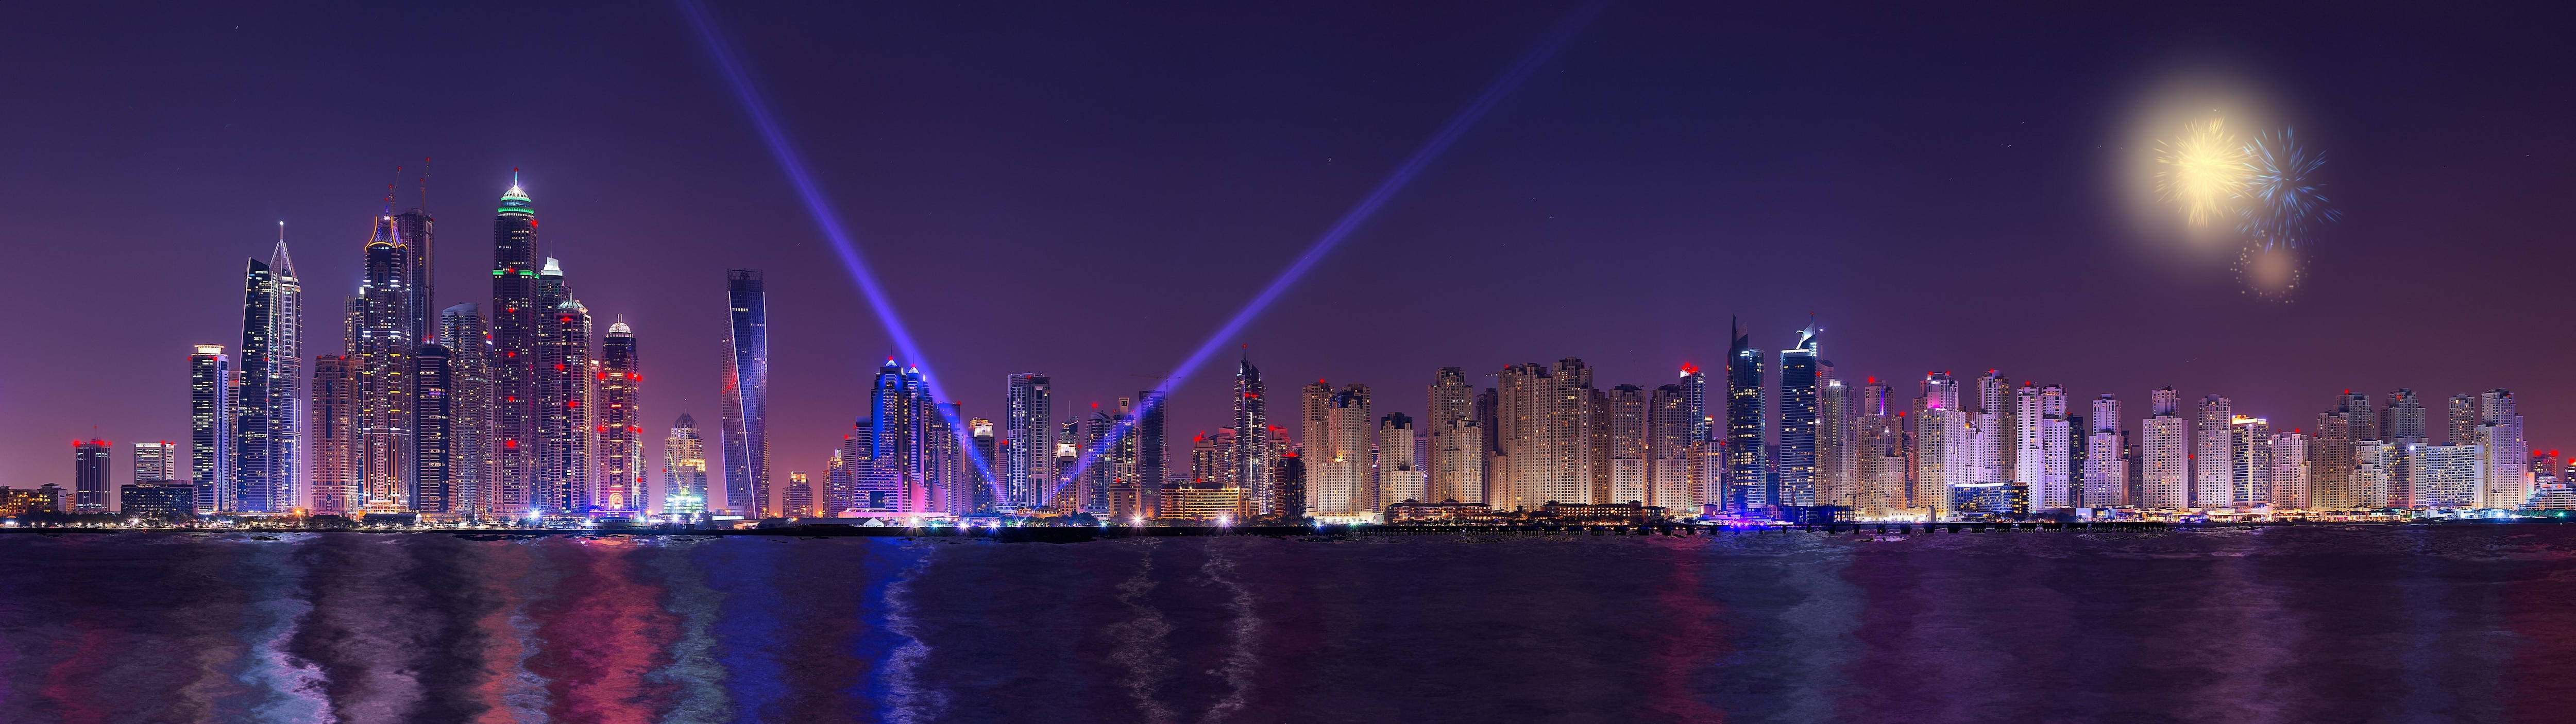 Papelde Parede Da Cidade De Dubai Em 4k Ultra Widescreen. Papel de Parede